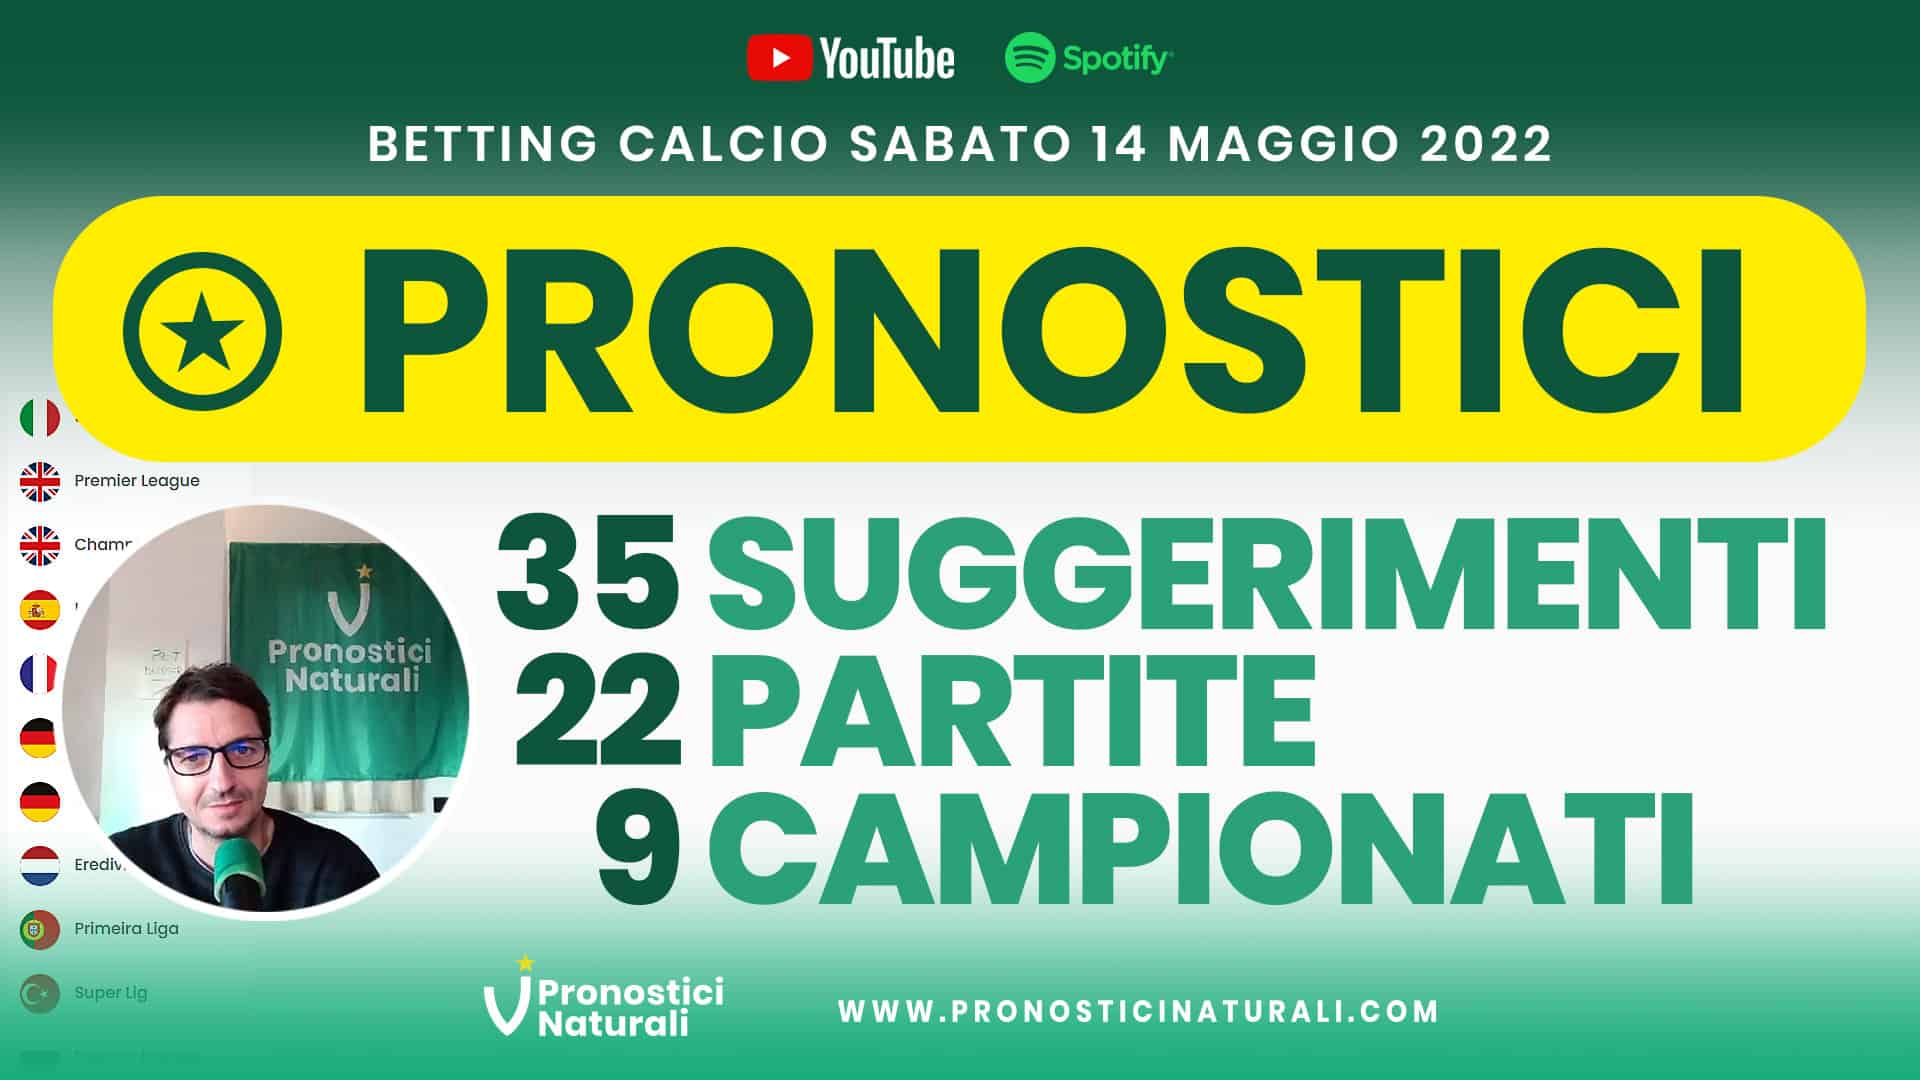 Pronostici Naturali Video Analisi Scommesse Betting Calcio Analisi Pre Partite Sabato 14 Maggio 2022